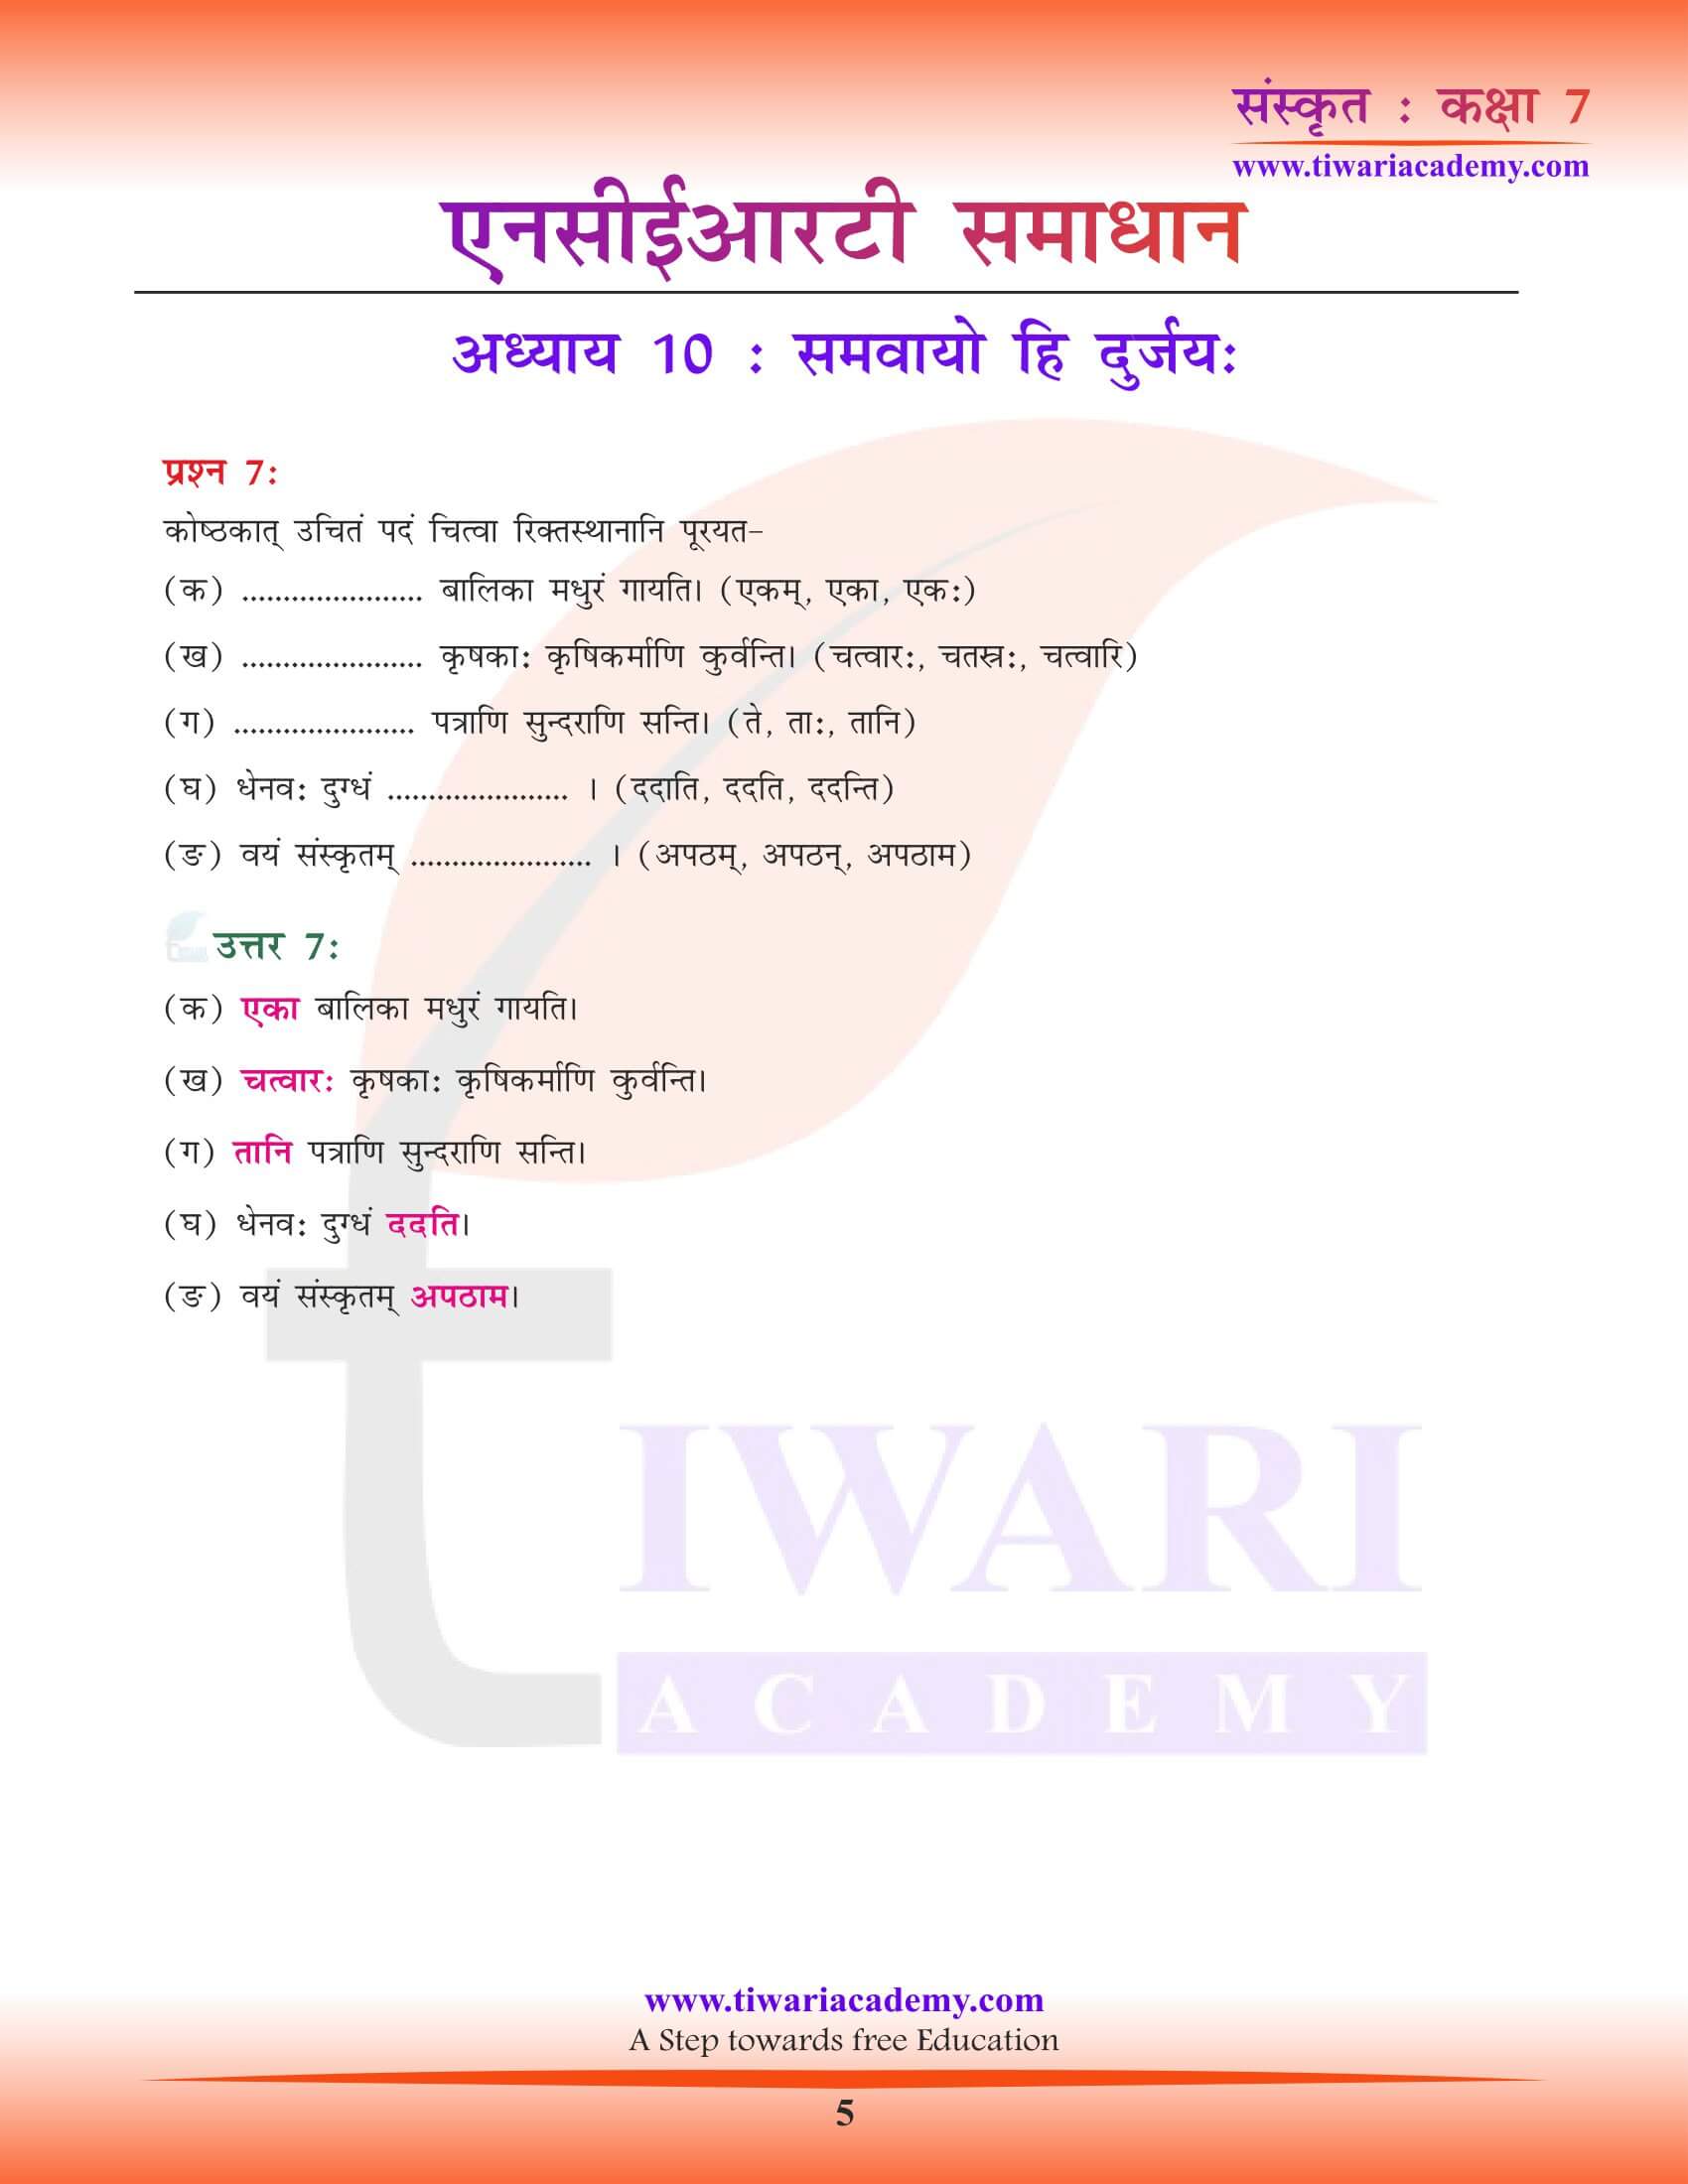 कक्षा 7 संस्कृत पाठ 10 की गाइड हिंदी में